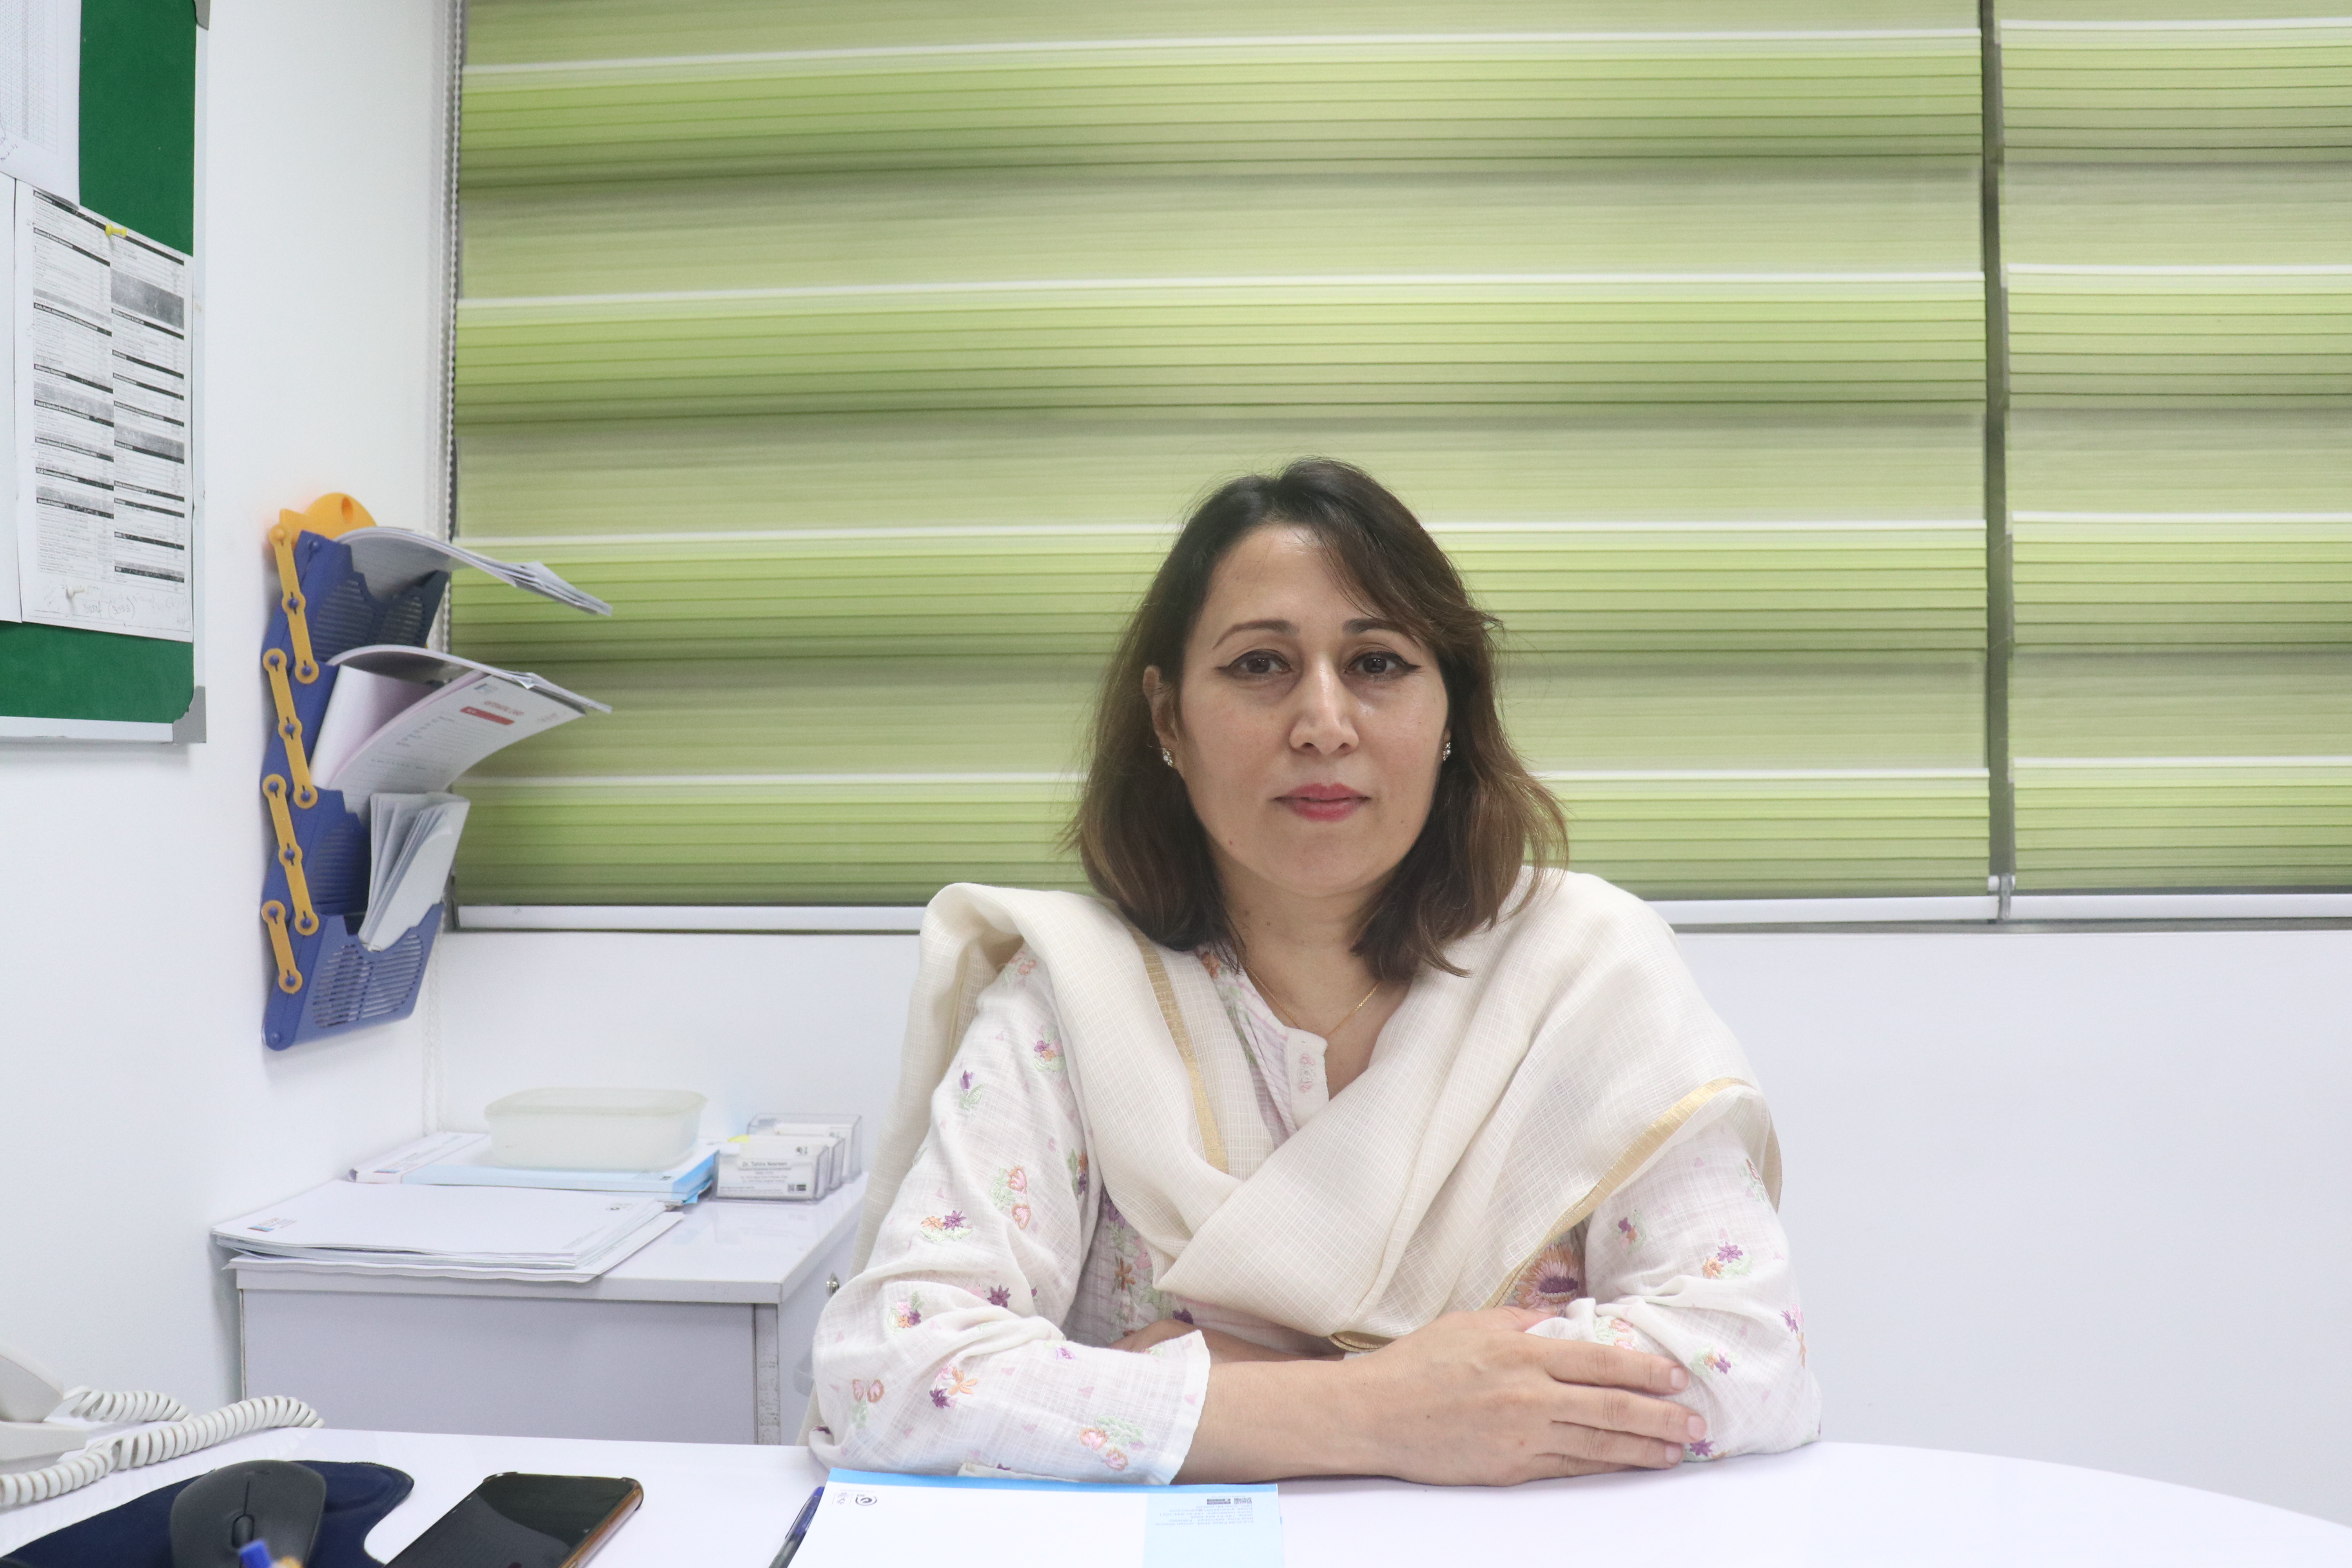 Dr. Farzana Nawaz